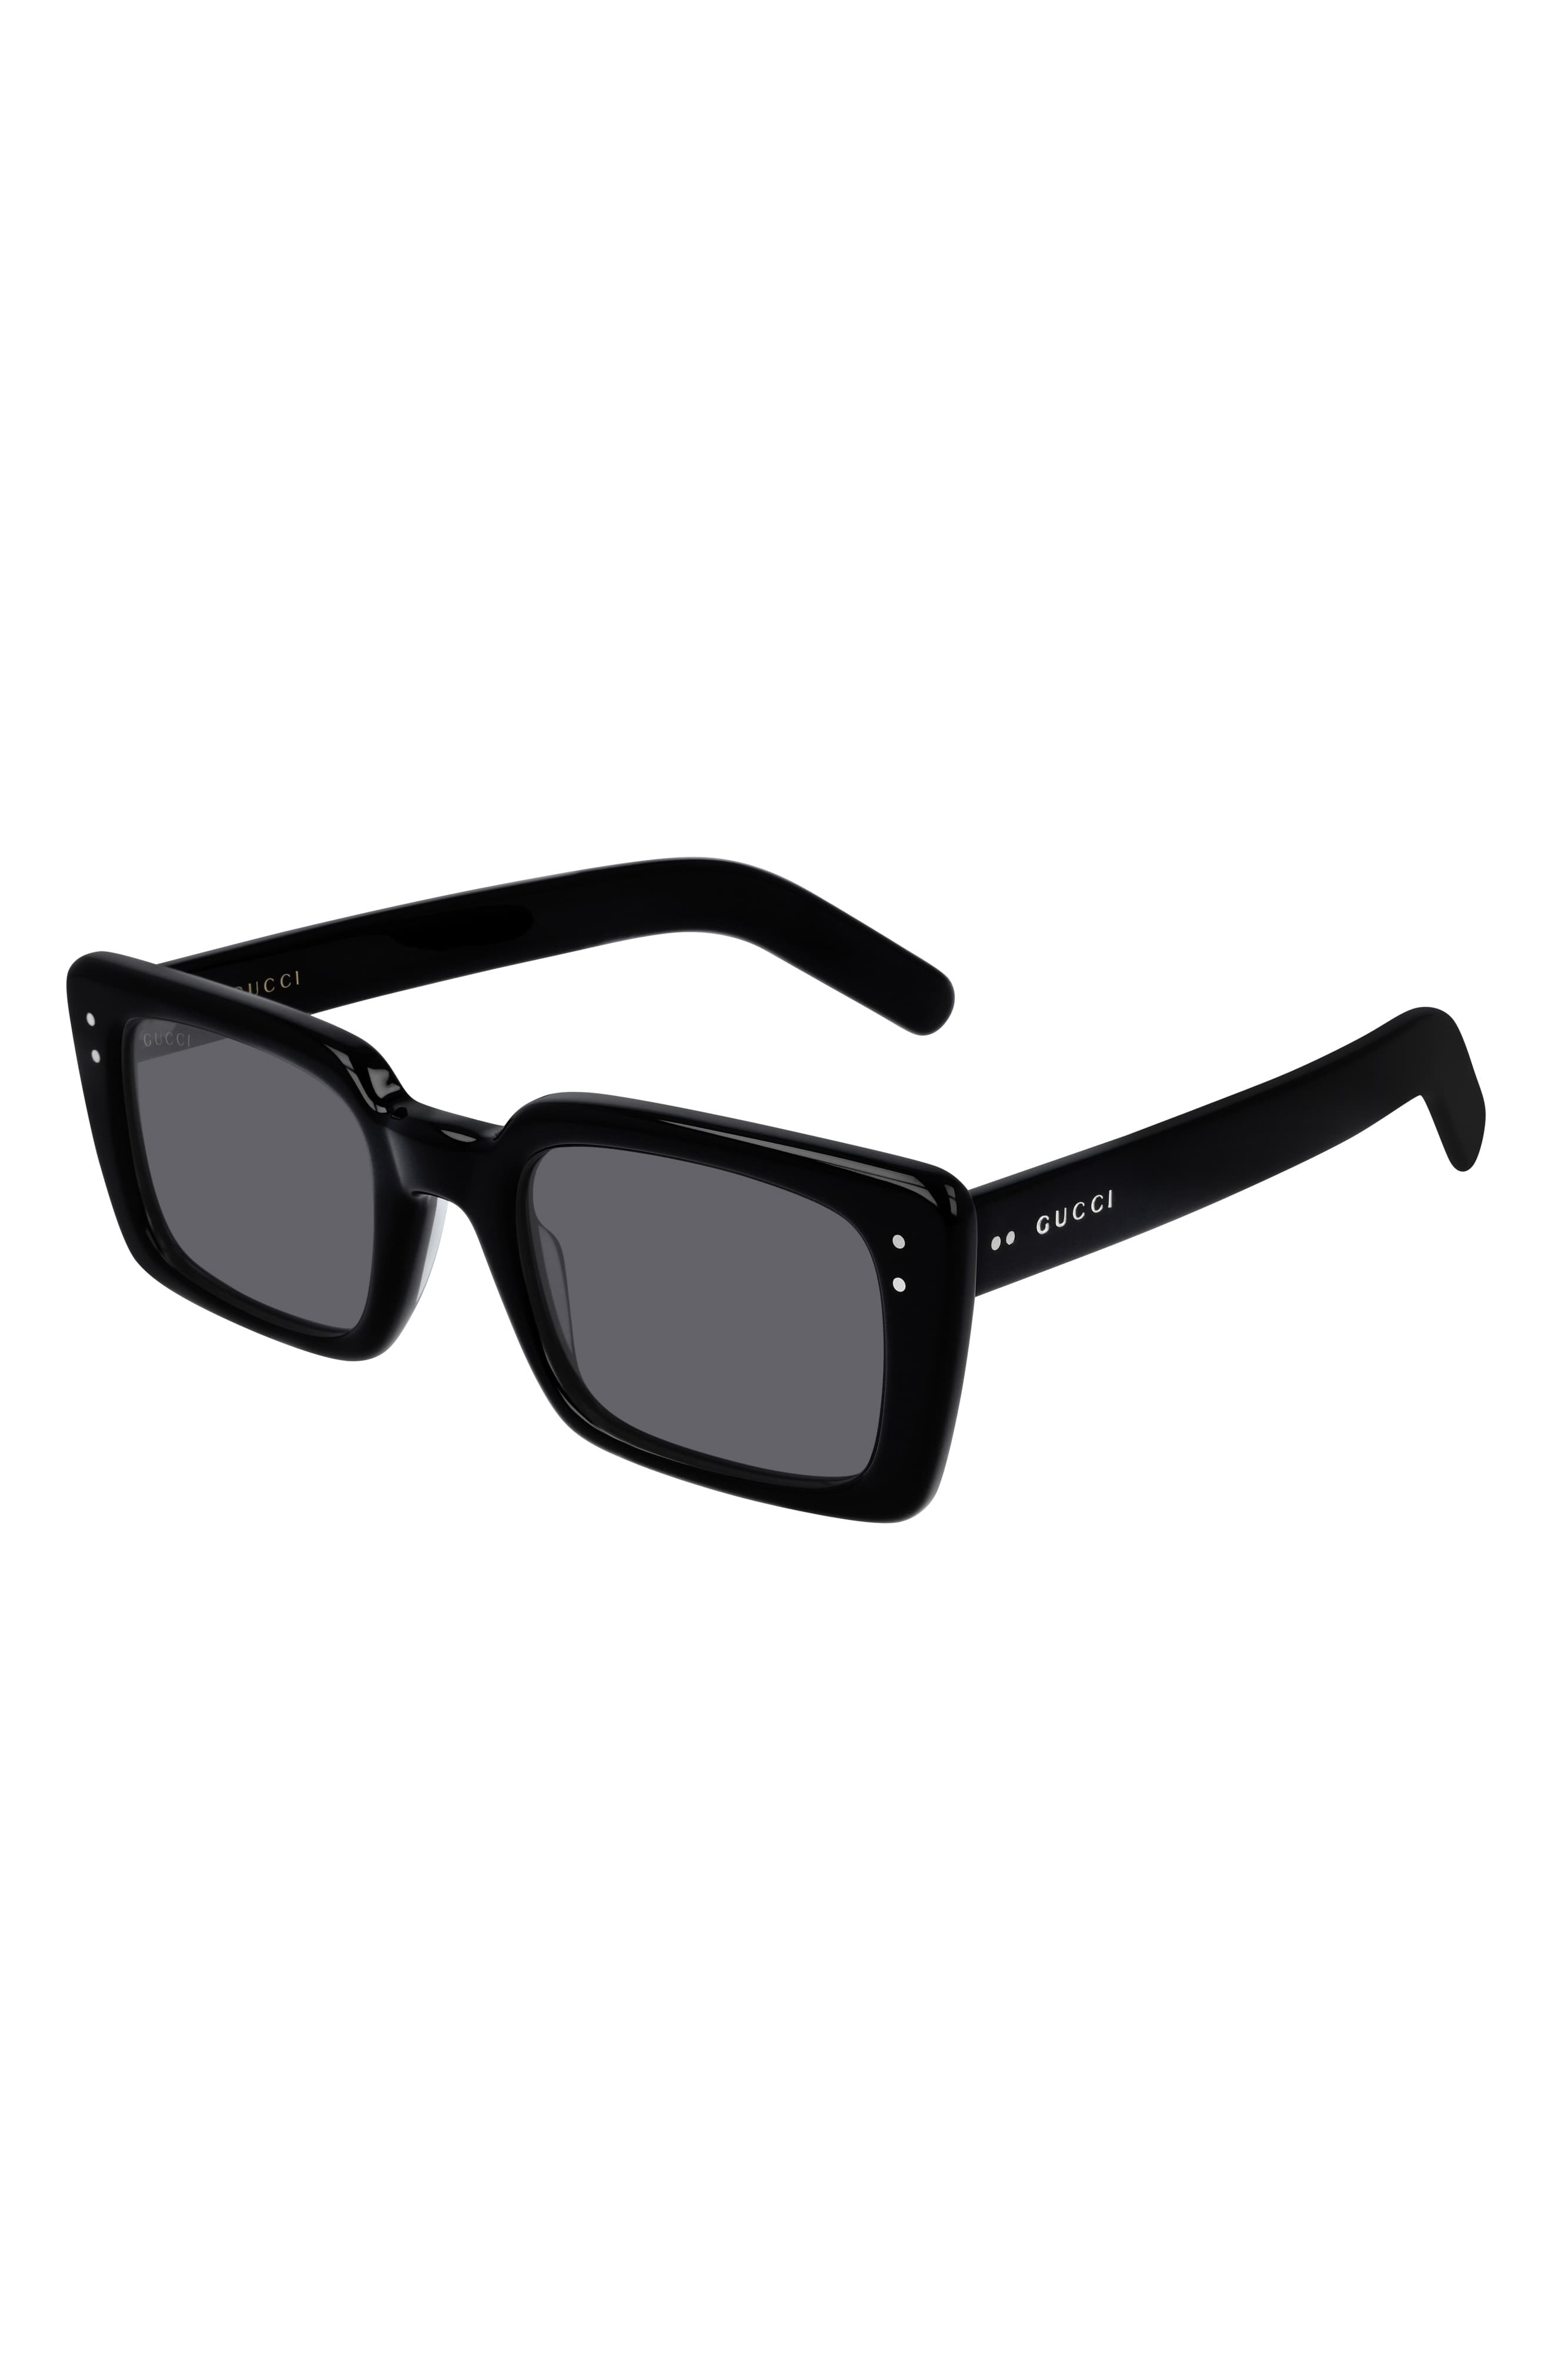 Gucci 52mm Rectangle Sunglasses Shiny Black The Fashionisto